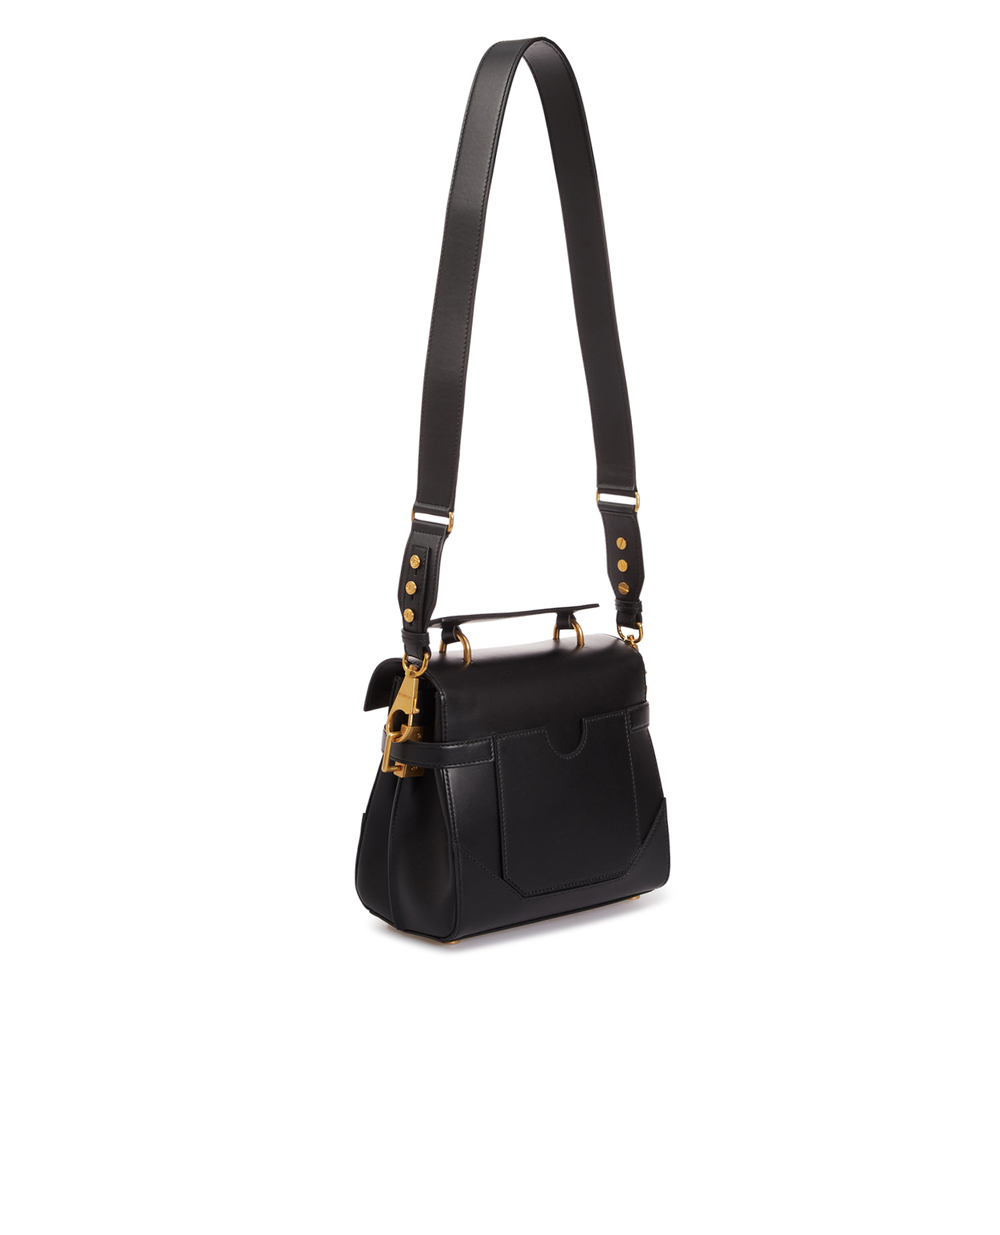 Кожаная сумка B-Buzz 23 Balmain BN1DB526LAVE, черный цвет • Купить в интернет-магазине Kameron